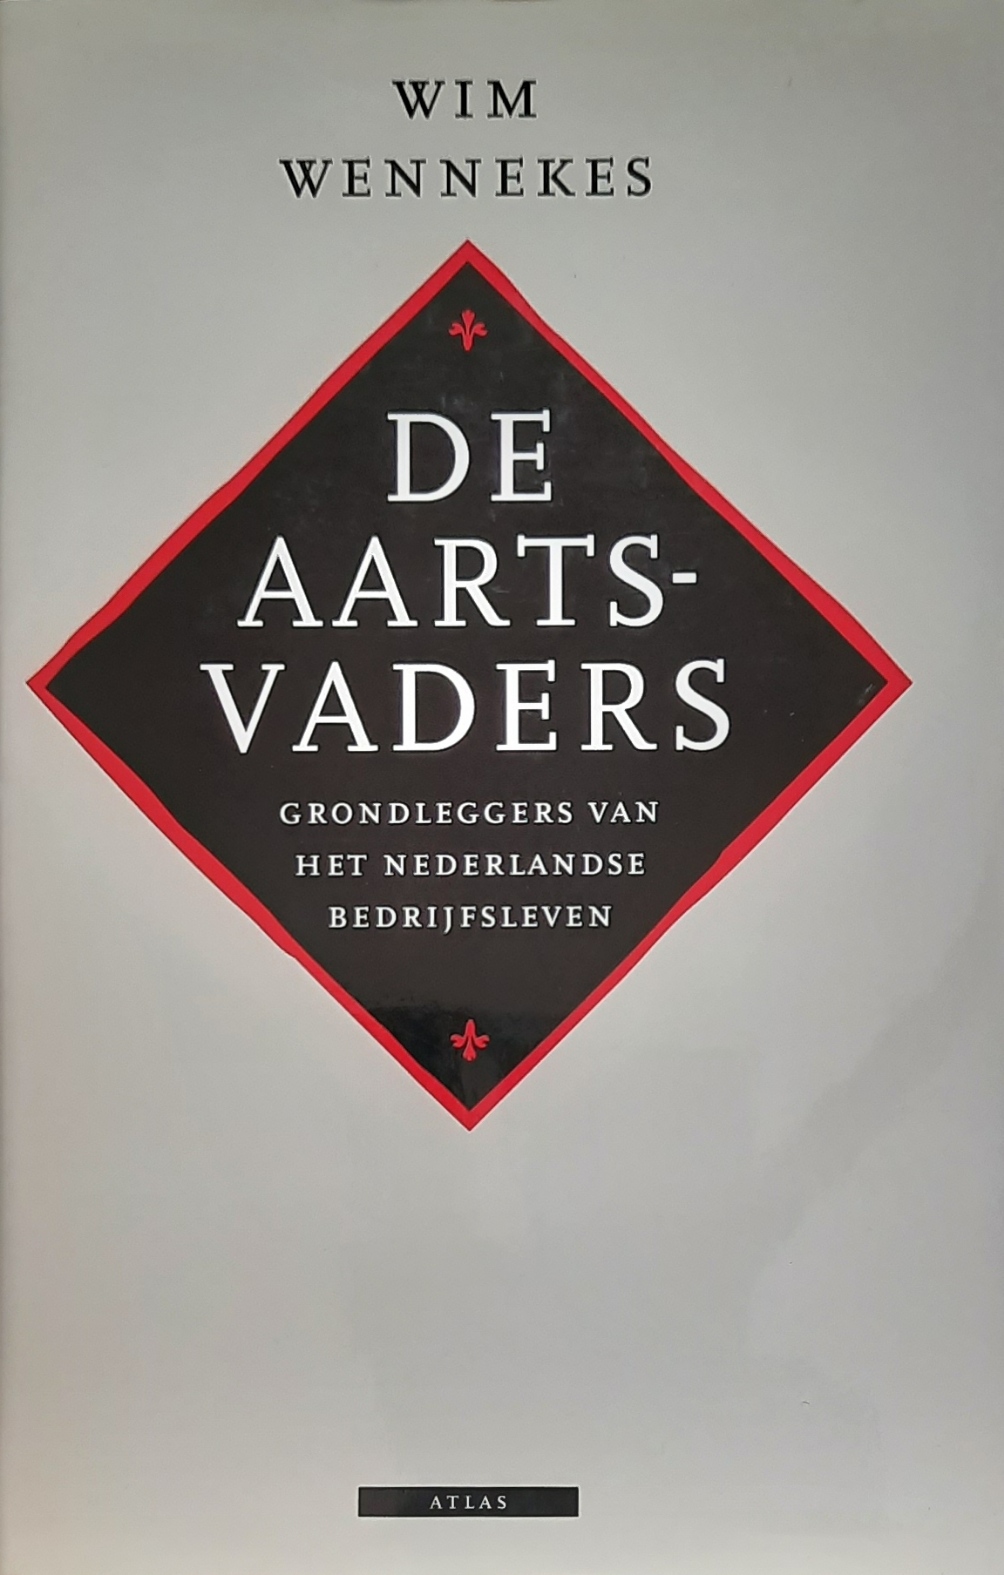 Book cover 202106261744: WENNEKES Wim | De aartsvaders: grondleggers van het Nederlandse bedrijfsleven 